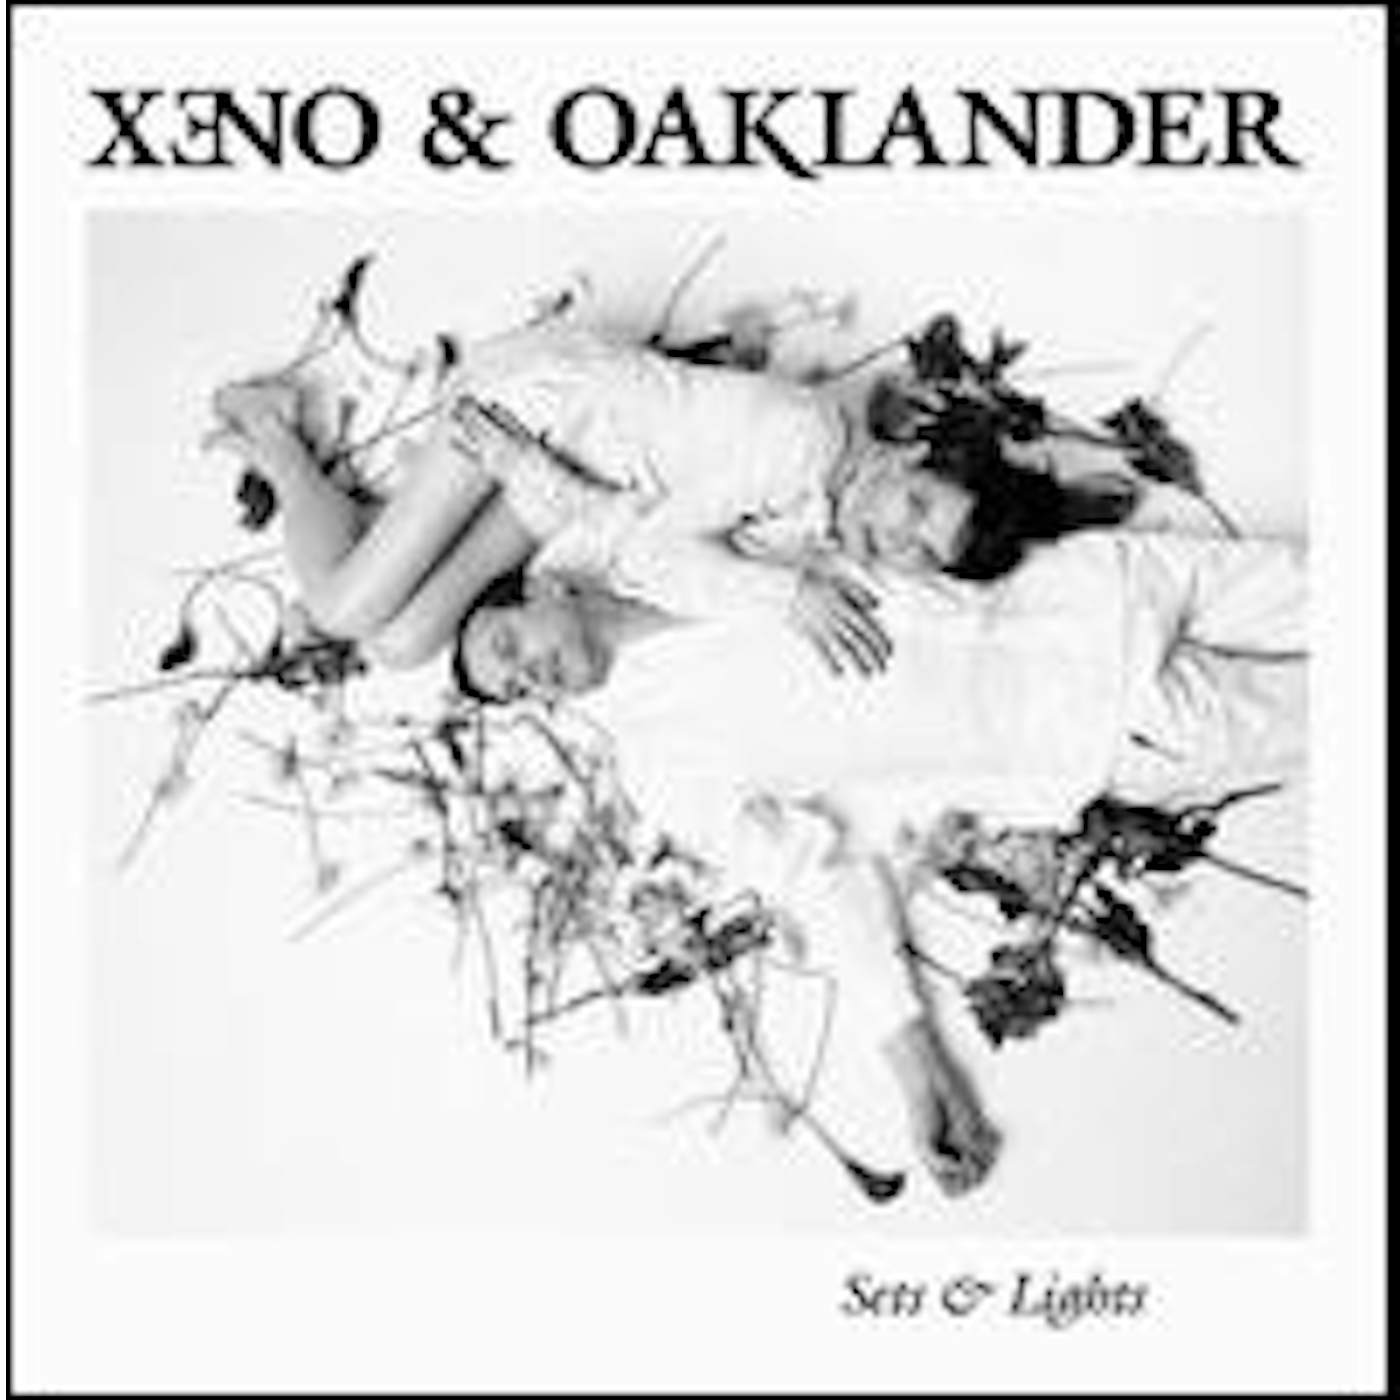 Xeno & Oaklander Sets & Lights Vinyl Record